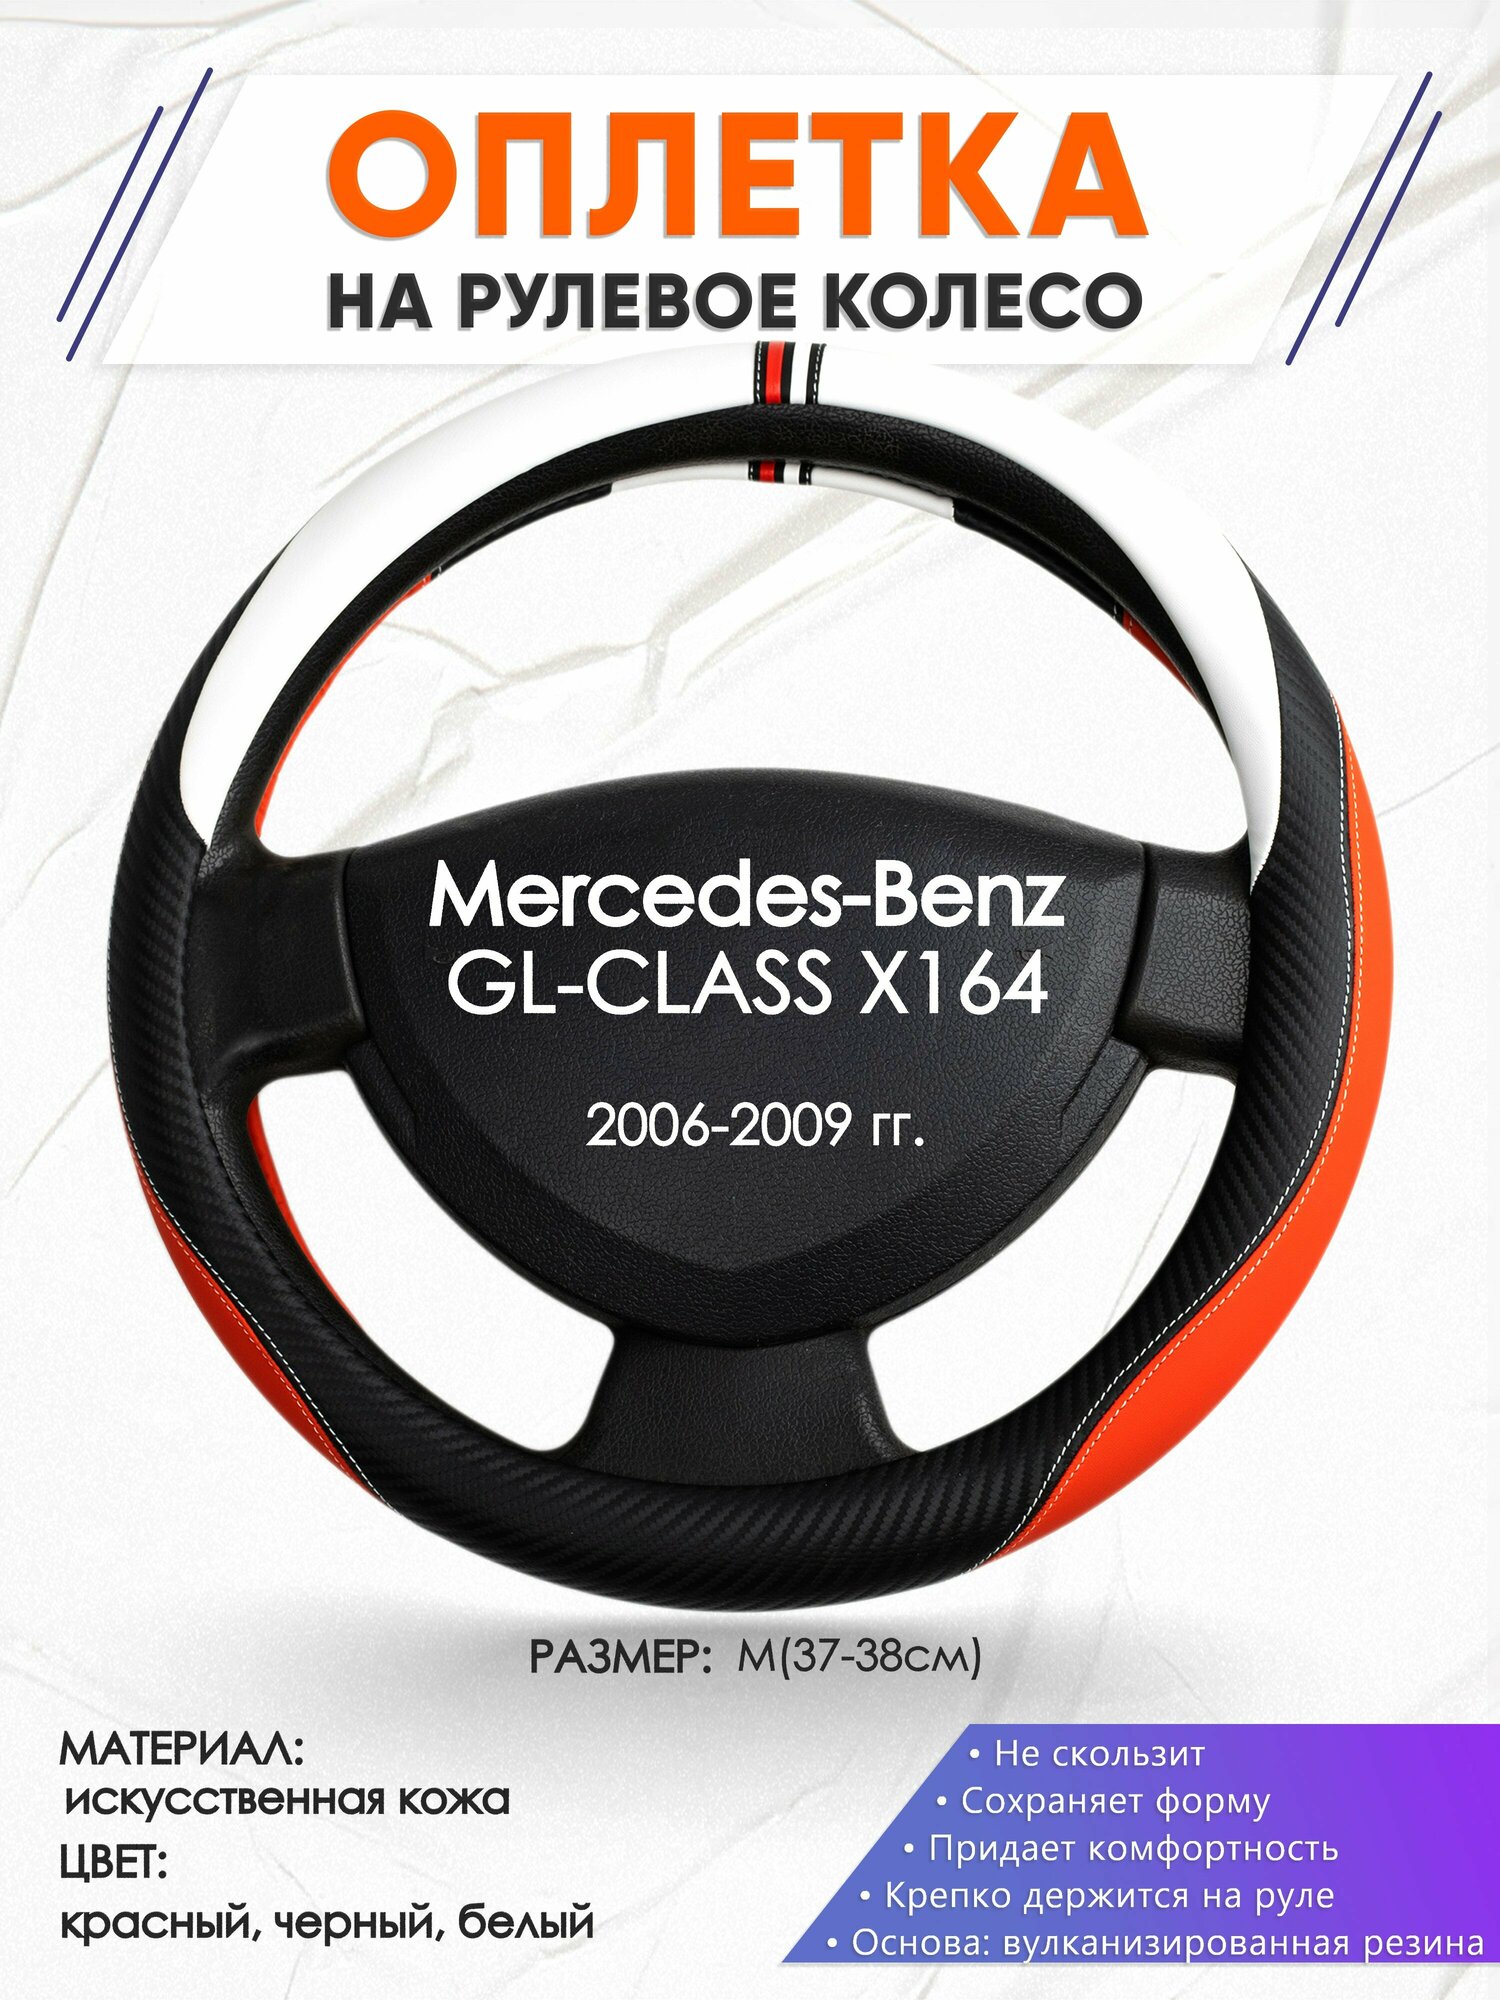 Оплетка наруль для Mercedes-Benz GL-CLASS X164(Мерседес Бенц ГЛ Класс Х164) 2006-2009 годов выпуска, размер M(37-38см), Искусственная кожа 55